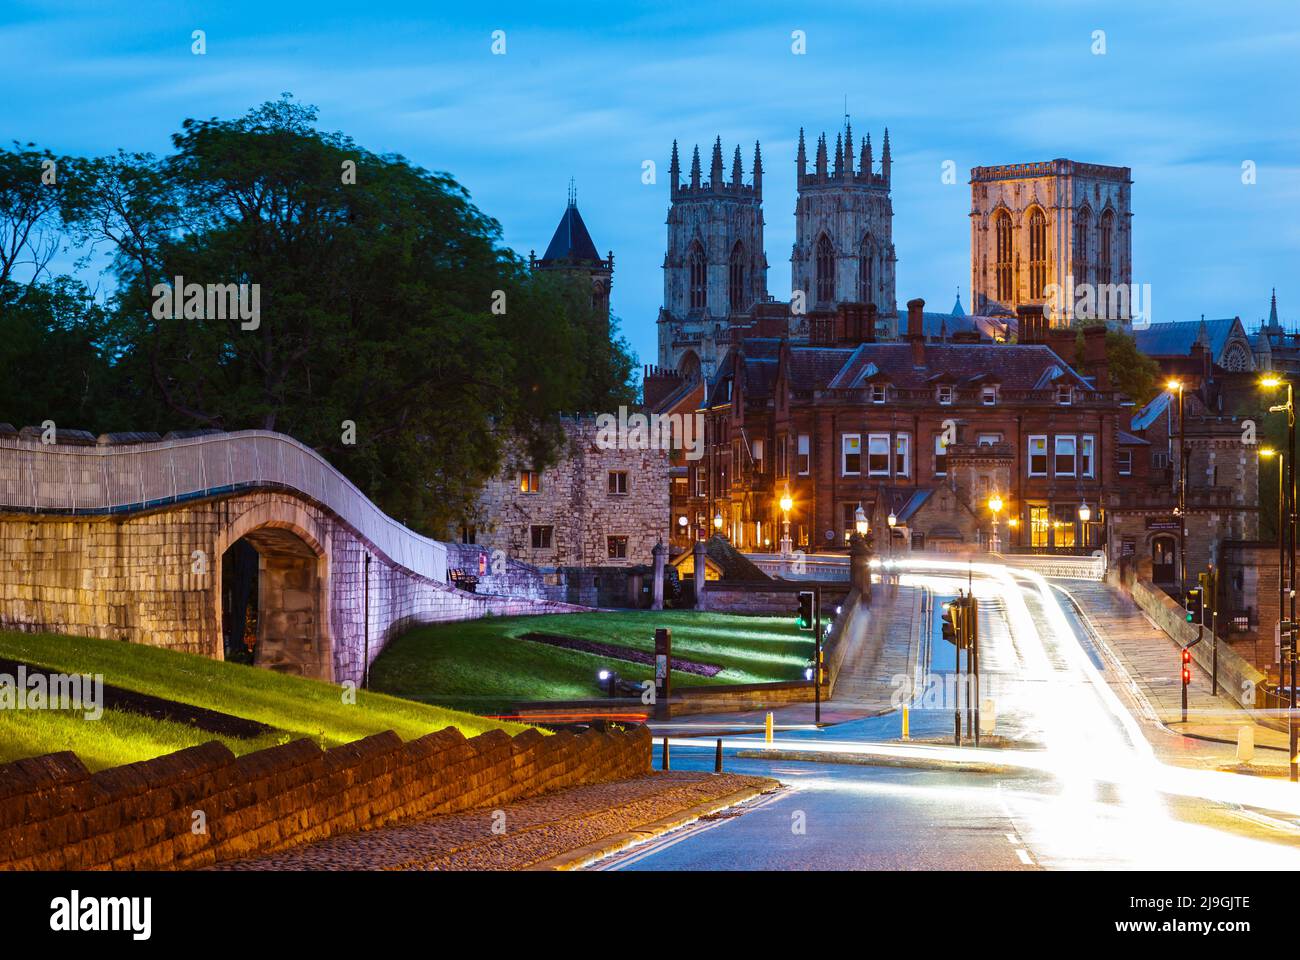 La notte cade nella città di York, Inghilterra. York Minster domina la città. Foto Stock